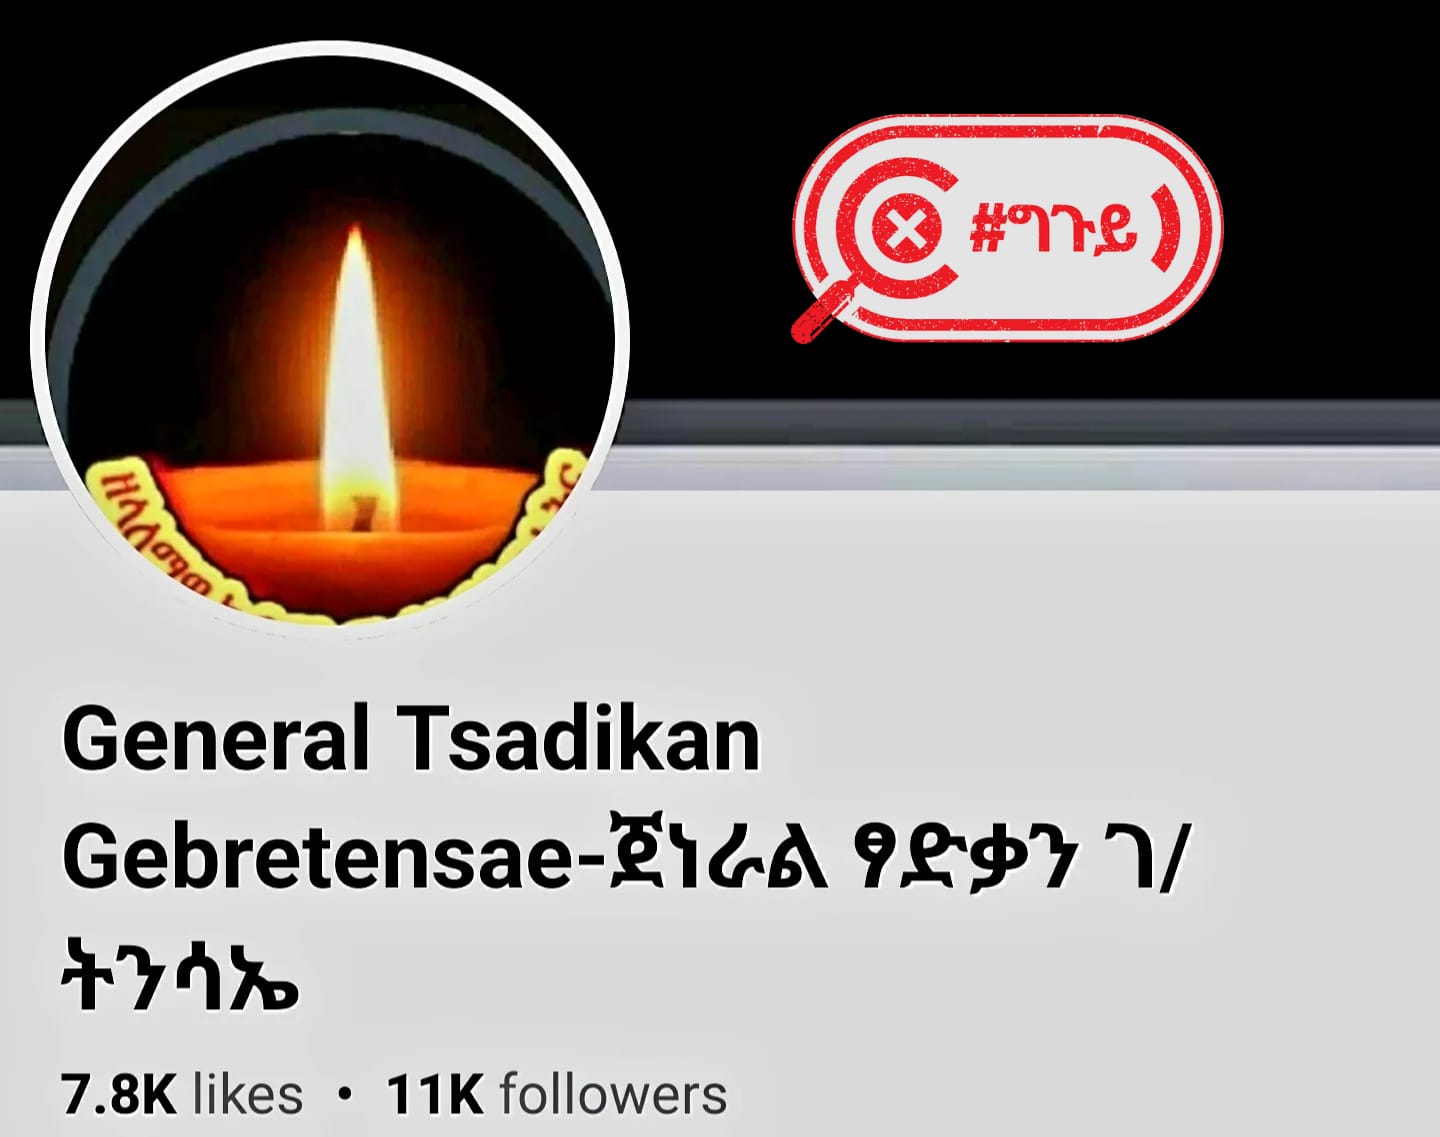 A fake Facebook account using the name of General Tsadkan Gebretinsae